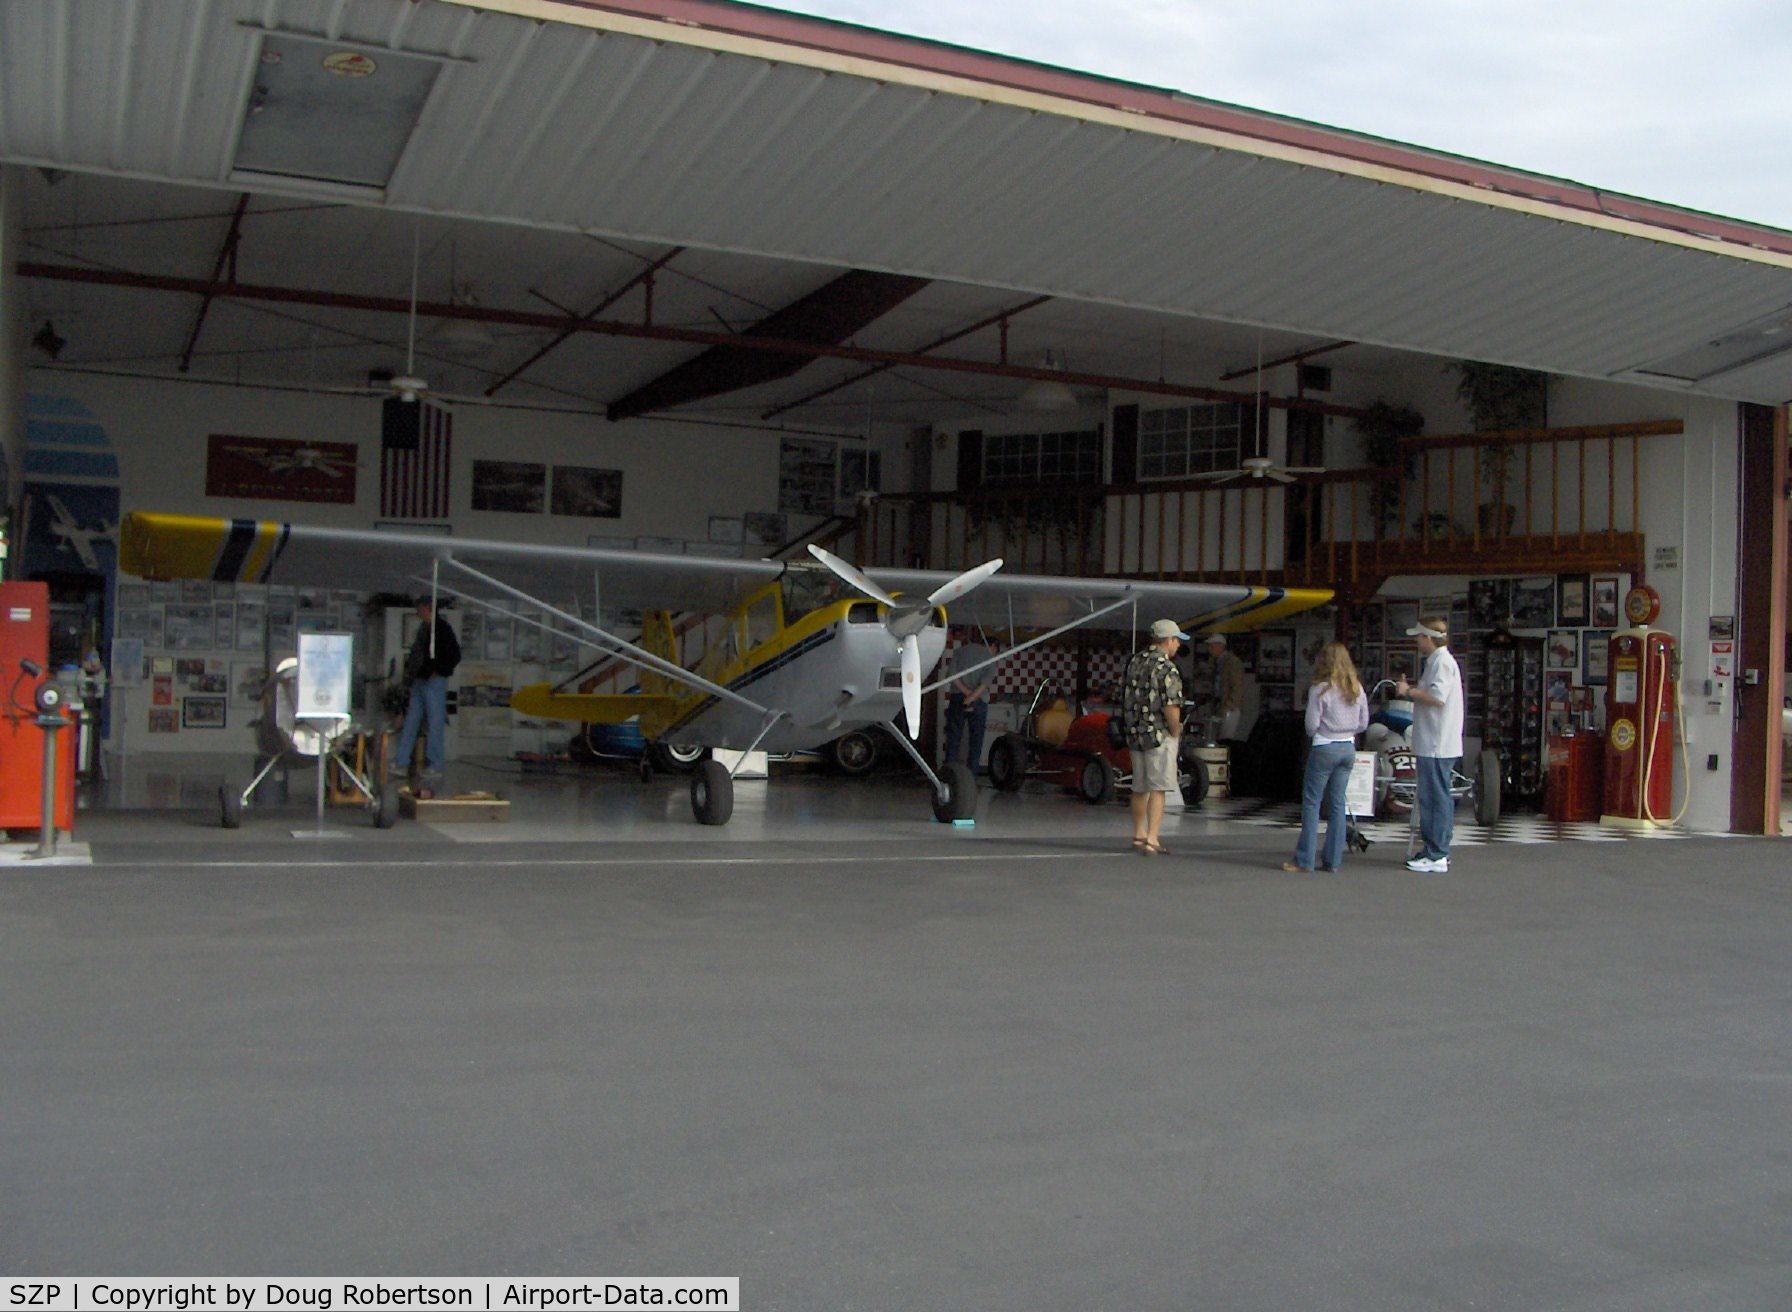 Santa Paula Airport (SZP) - Aviation Museum of Santa Paula, Hangar 7, The Dewey hangar